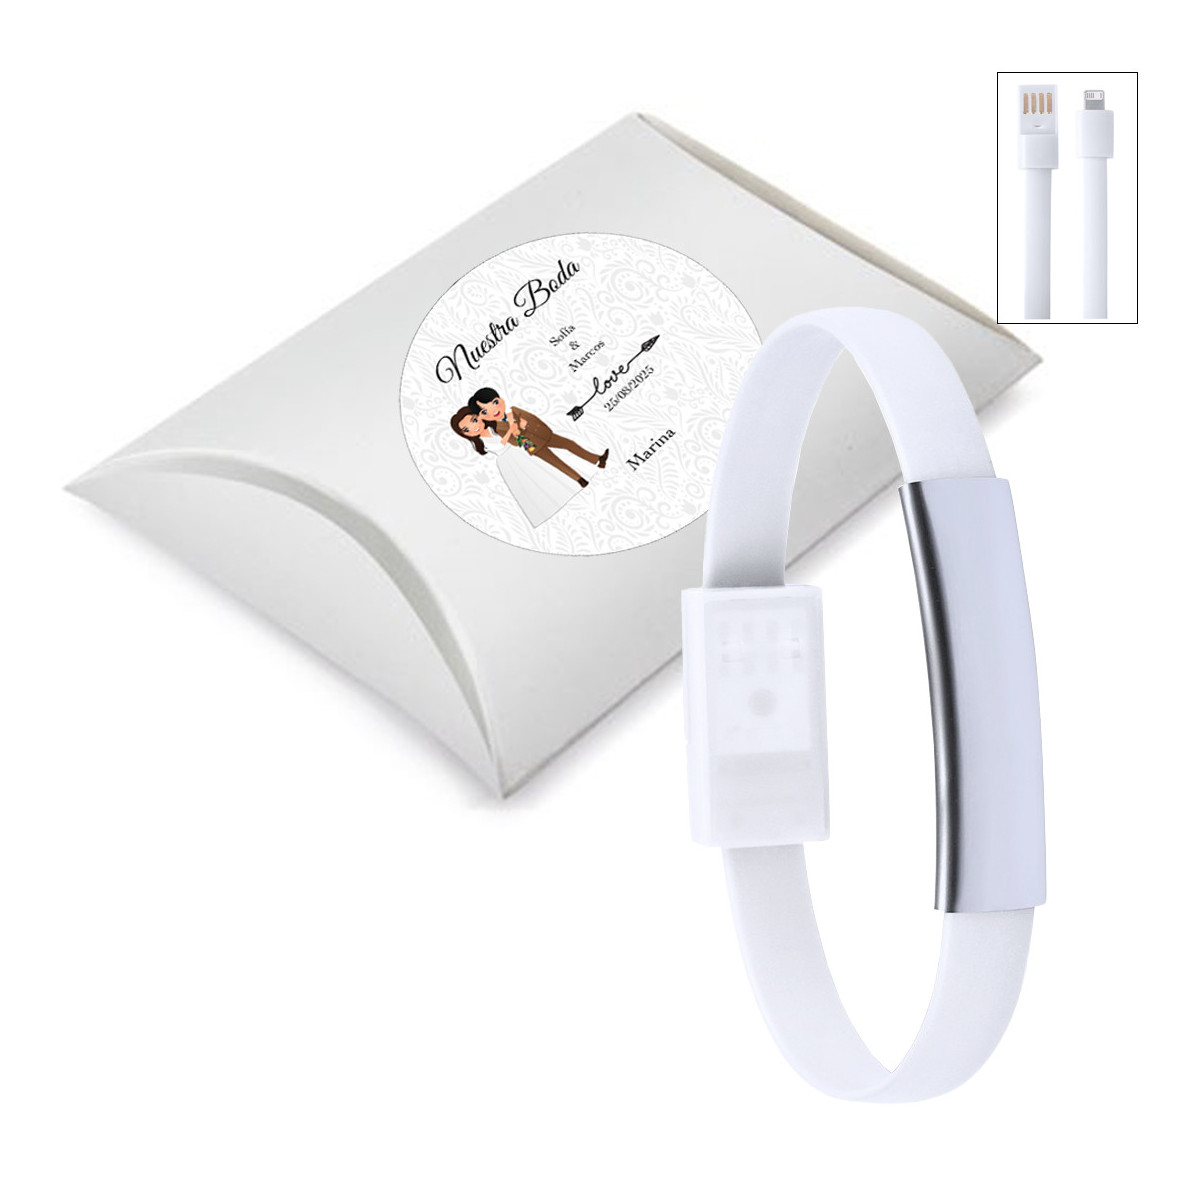 Pulseira carregadora de celular branca apresentada em caixa prateada e adesivo personalizado para casamentos